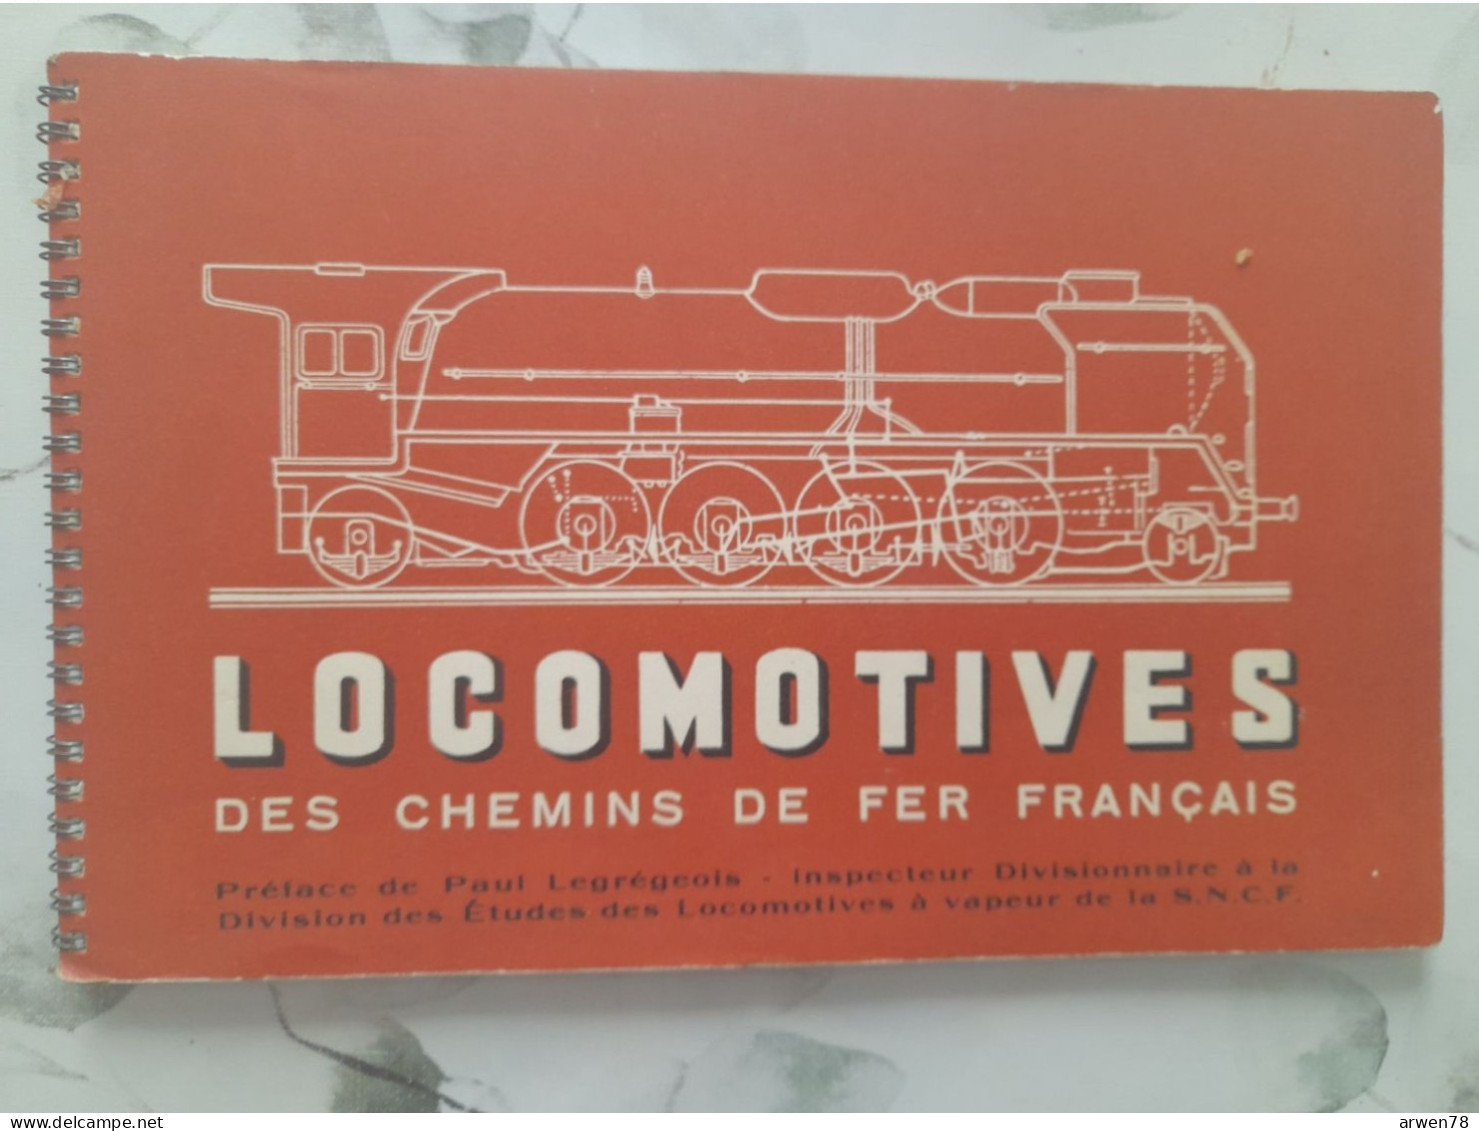 LOCOMOTIVES DES CHEMINS DE FER FRANCAIS N°2 Vapeur électriques Diesel Autorail PAUL LEGREGEOIS - Railway & Tramway